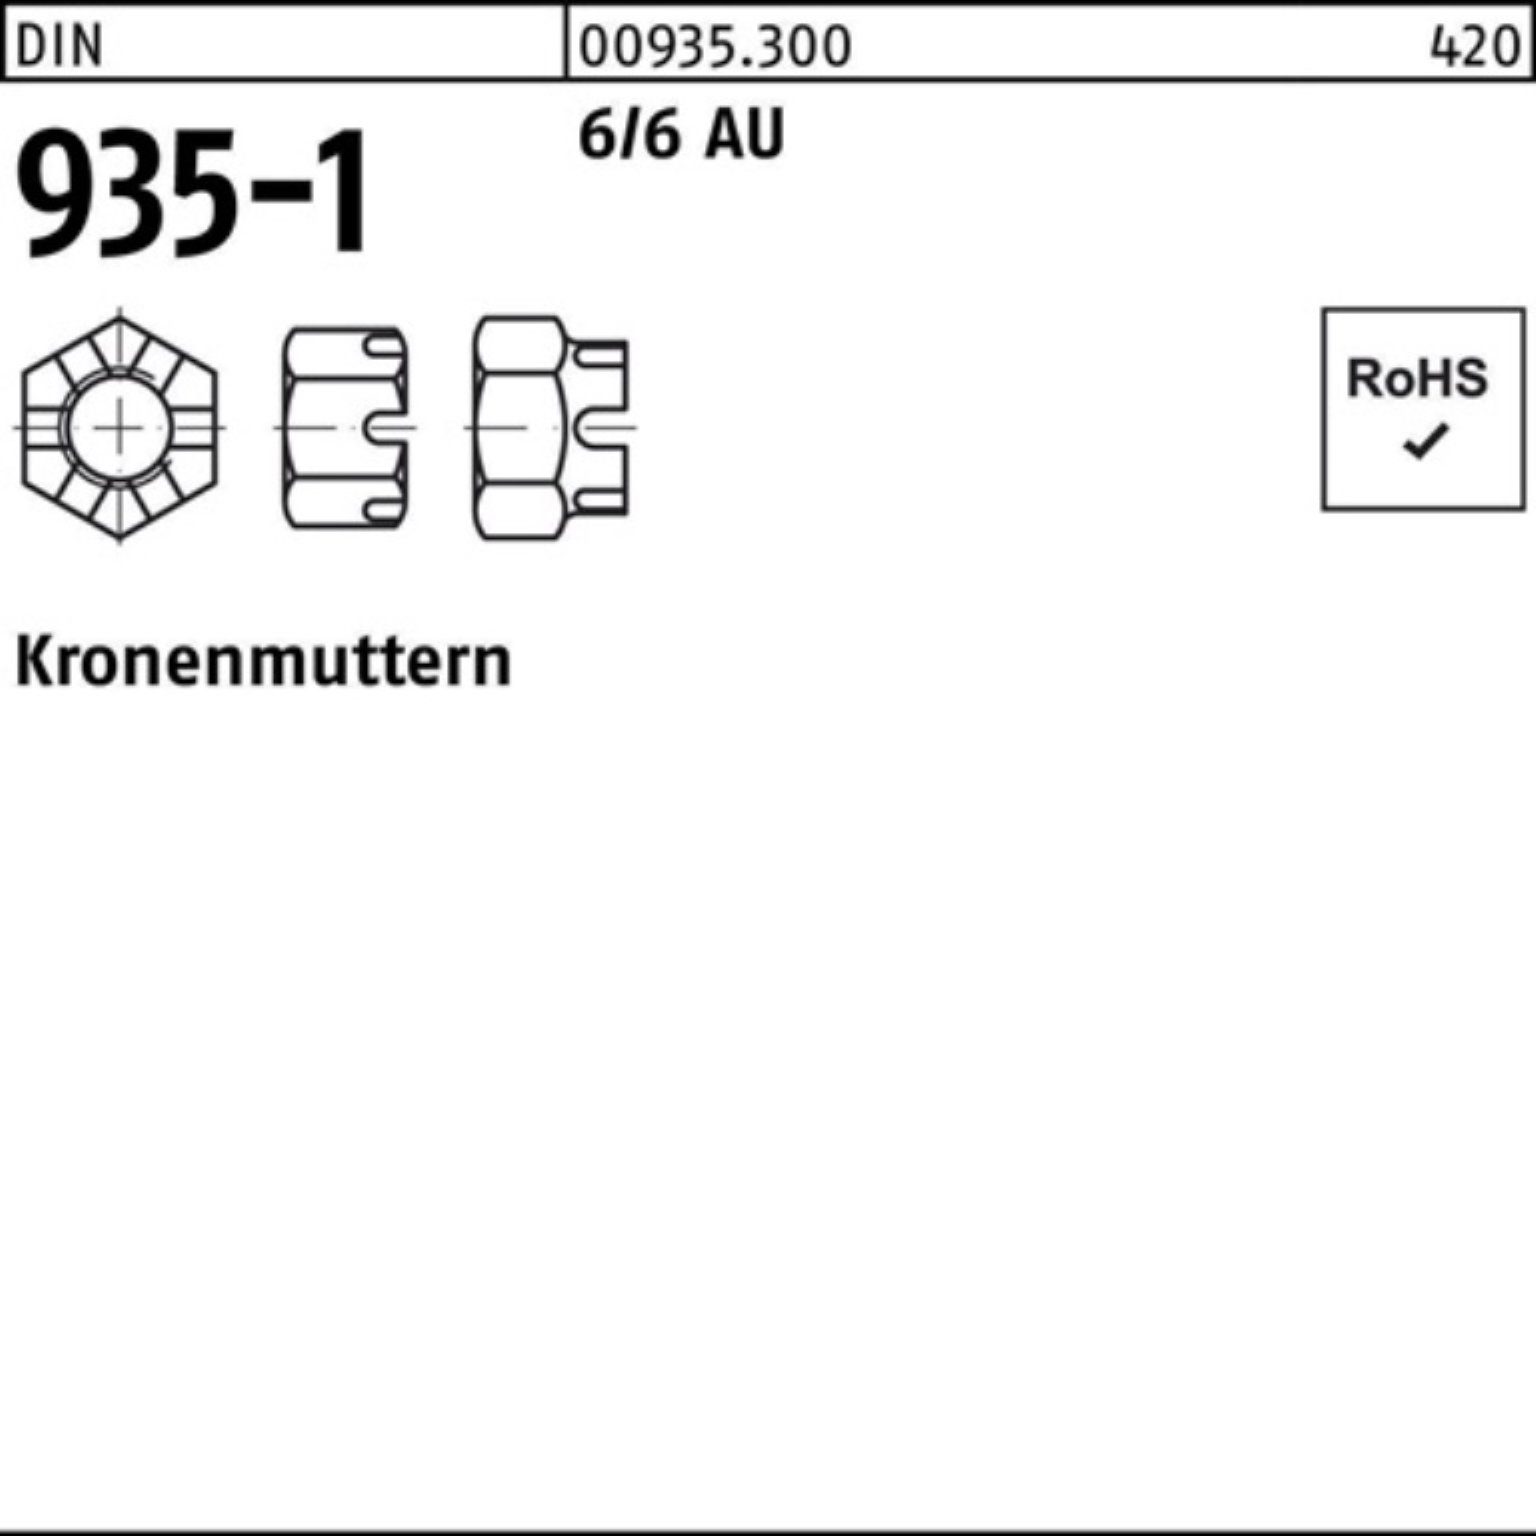 Reyher Kronenmutter 100er Pack Kronenmutter DIN 935-1 M6 6/6 Automatenstahl 100 Stück DIN